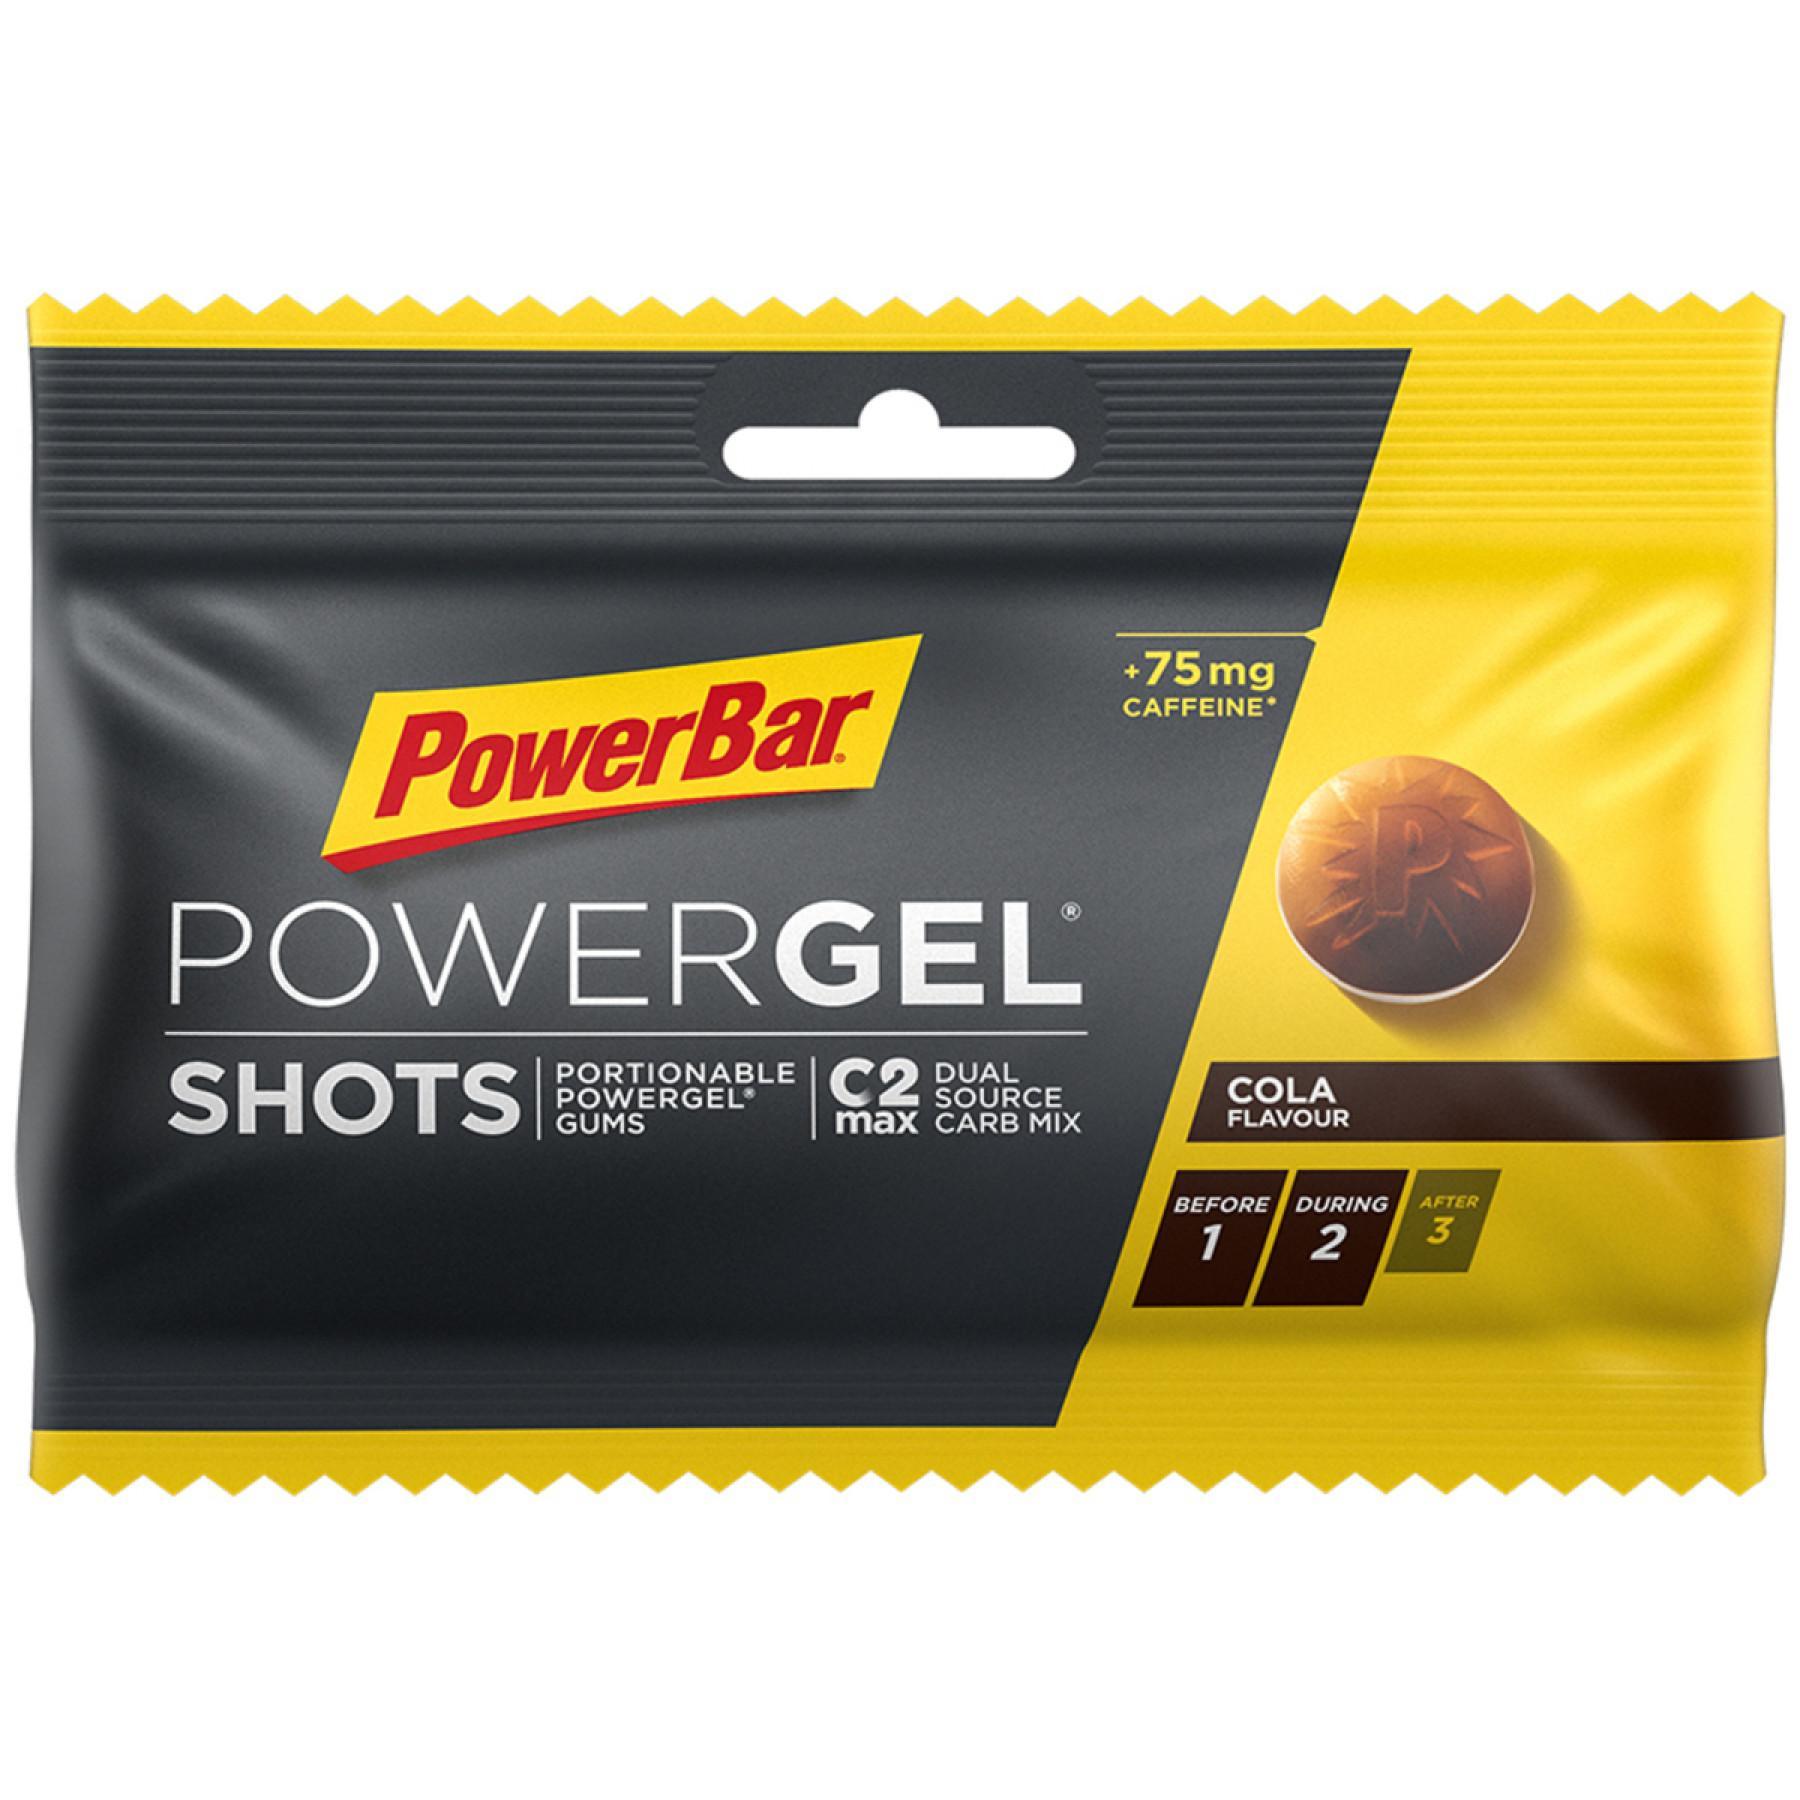 24 strzały PowerBar PowerGel 60gr